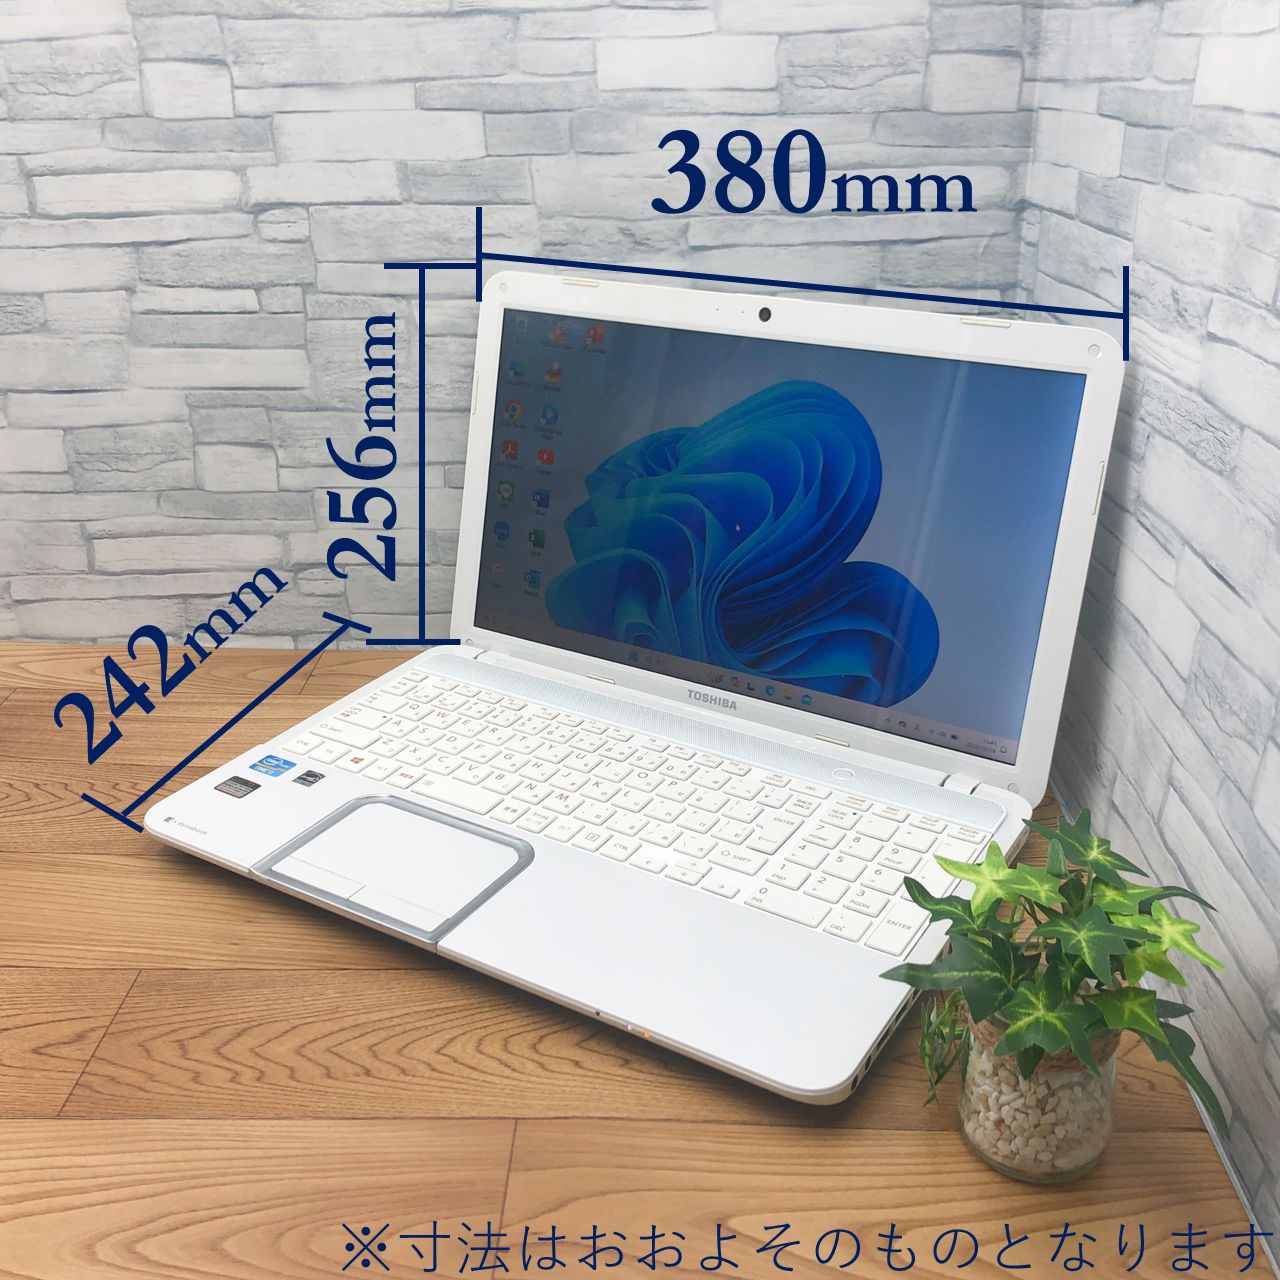 ★20,000円PCシリーズ★ Windows11 A4サイズSSD換装済みノートパソコン TOSHIBA dynabook T552  T552/58GW PT55258GBHW